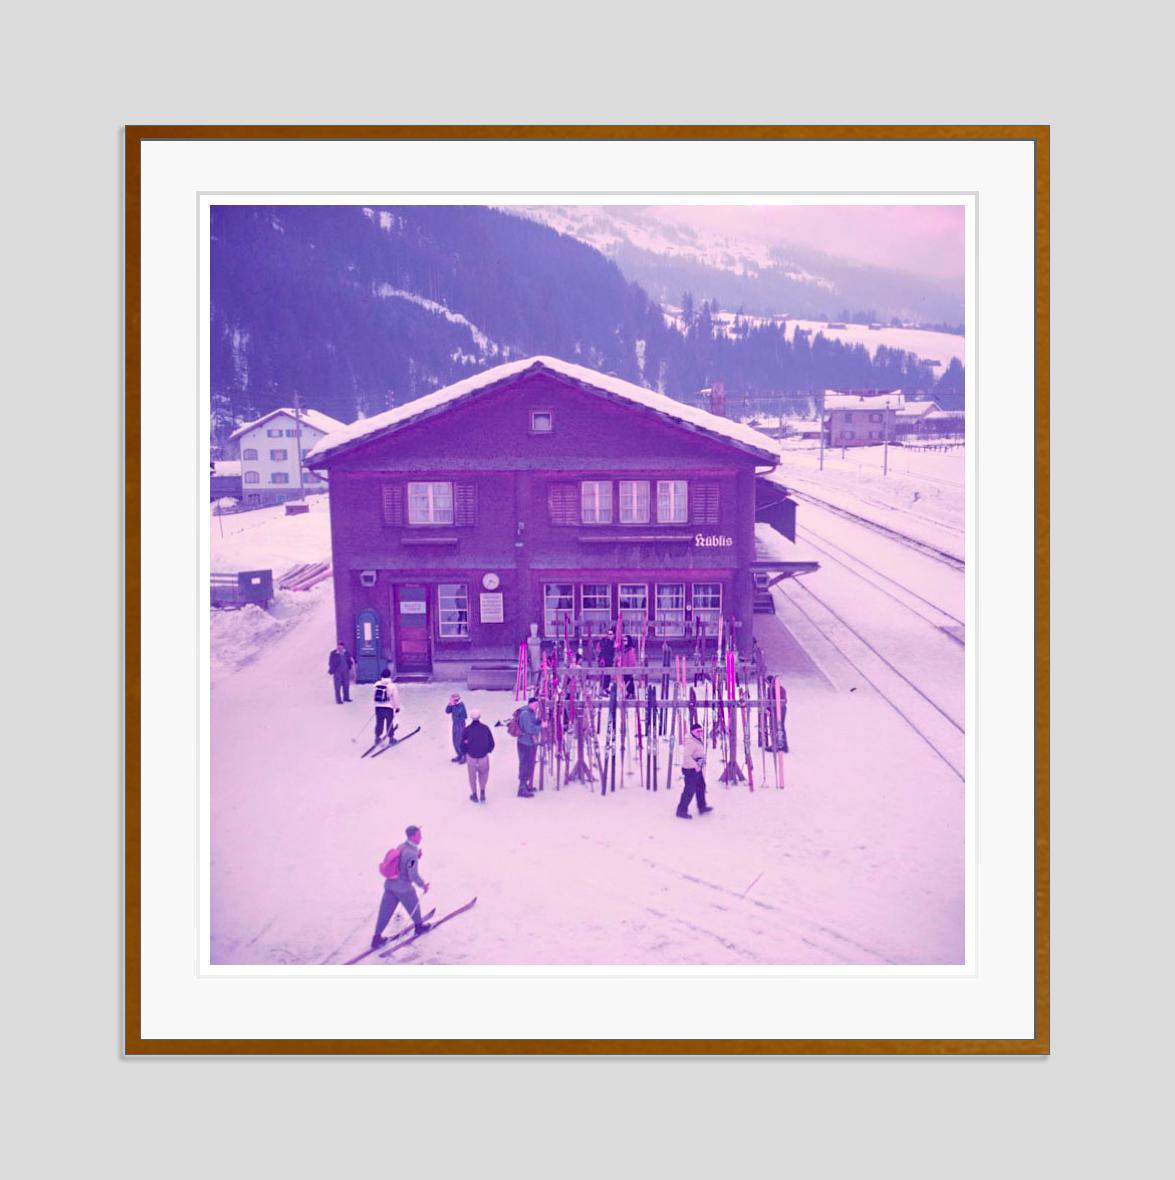 Alpine Railway Station 1951 Limitierte Signatur gestempelte Auflage  – Photograph von Toni Frissell